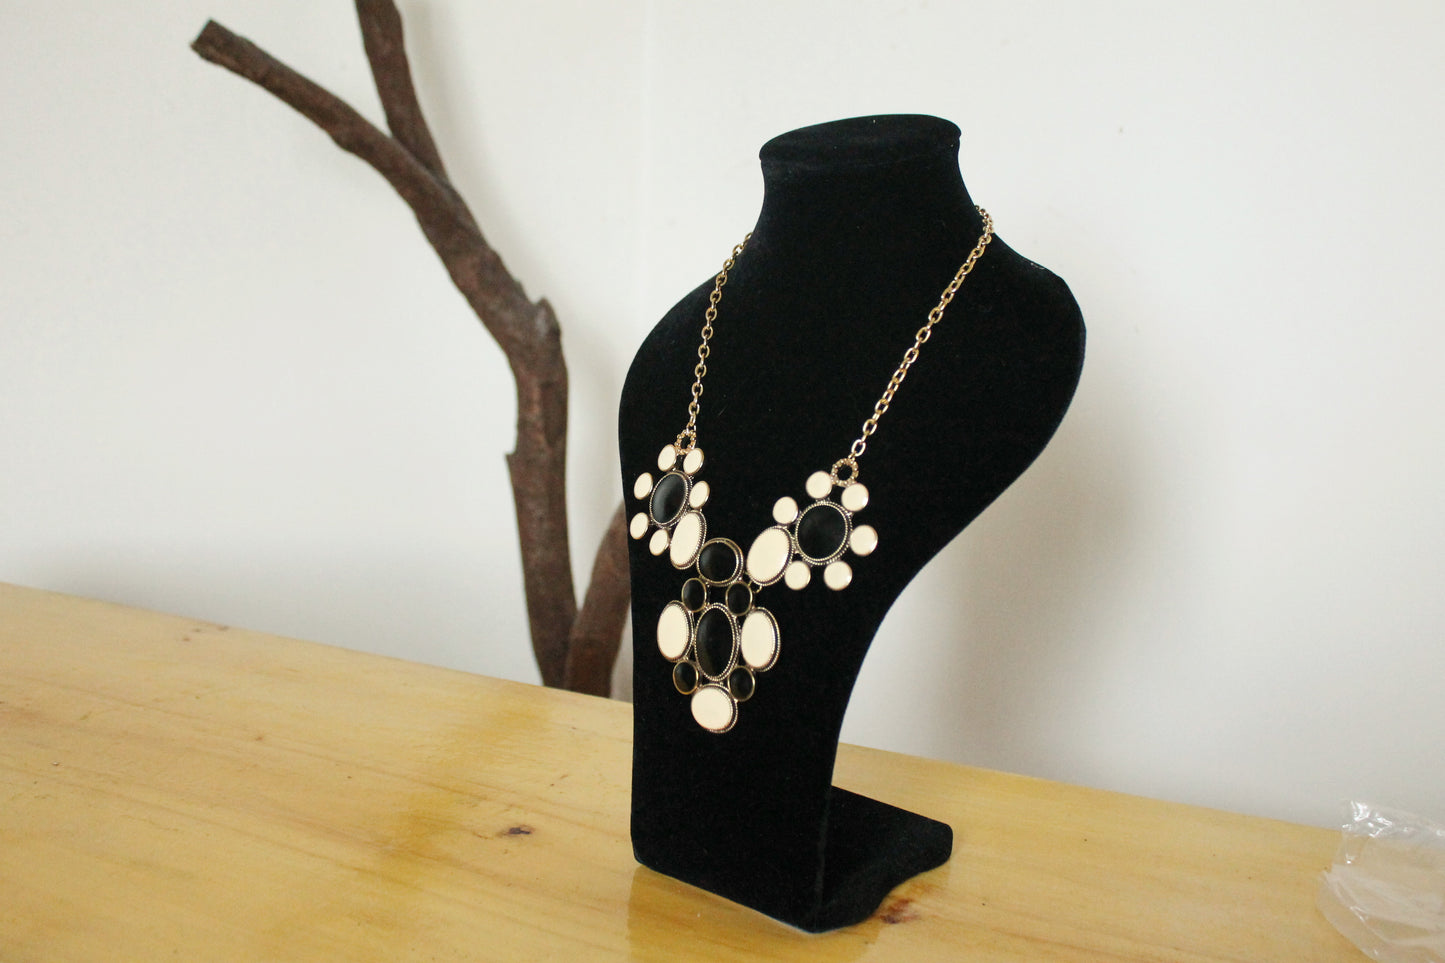 Vintage Flower necklace from Germany - Nekclace 1990s - Germany vintage bijouterie - gift neckalce